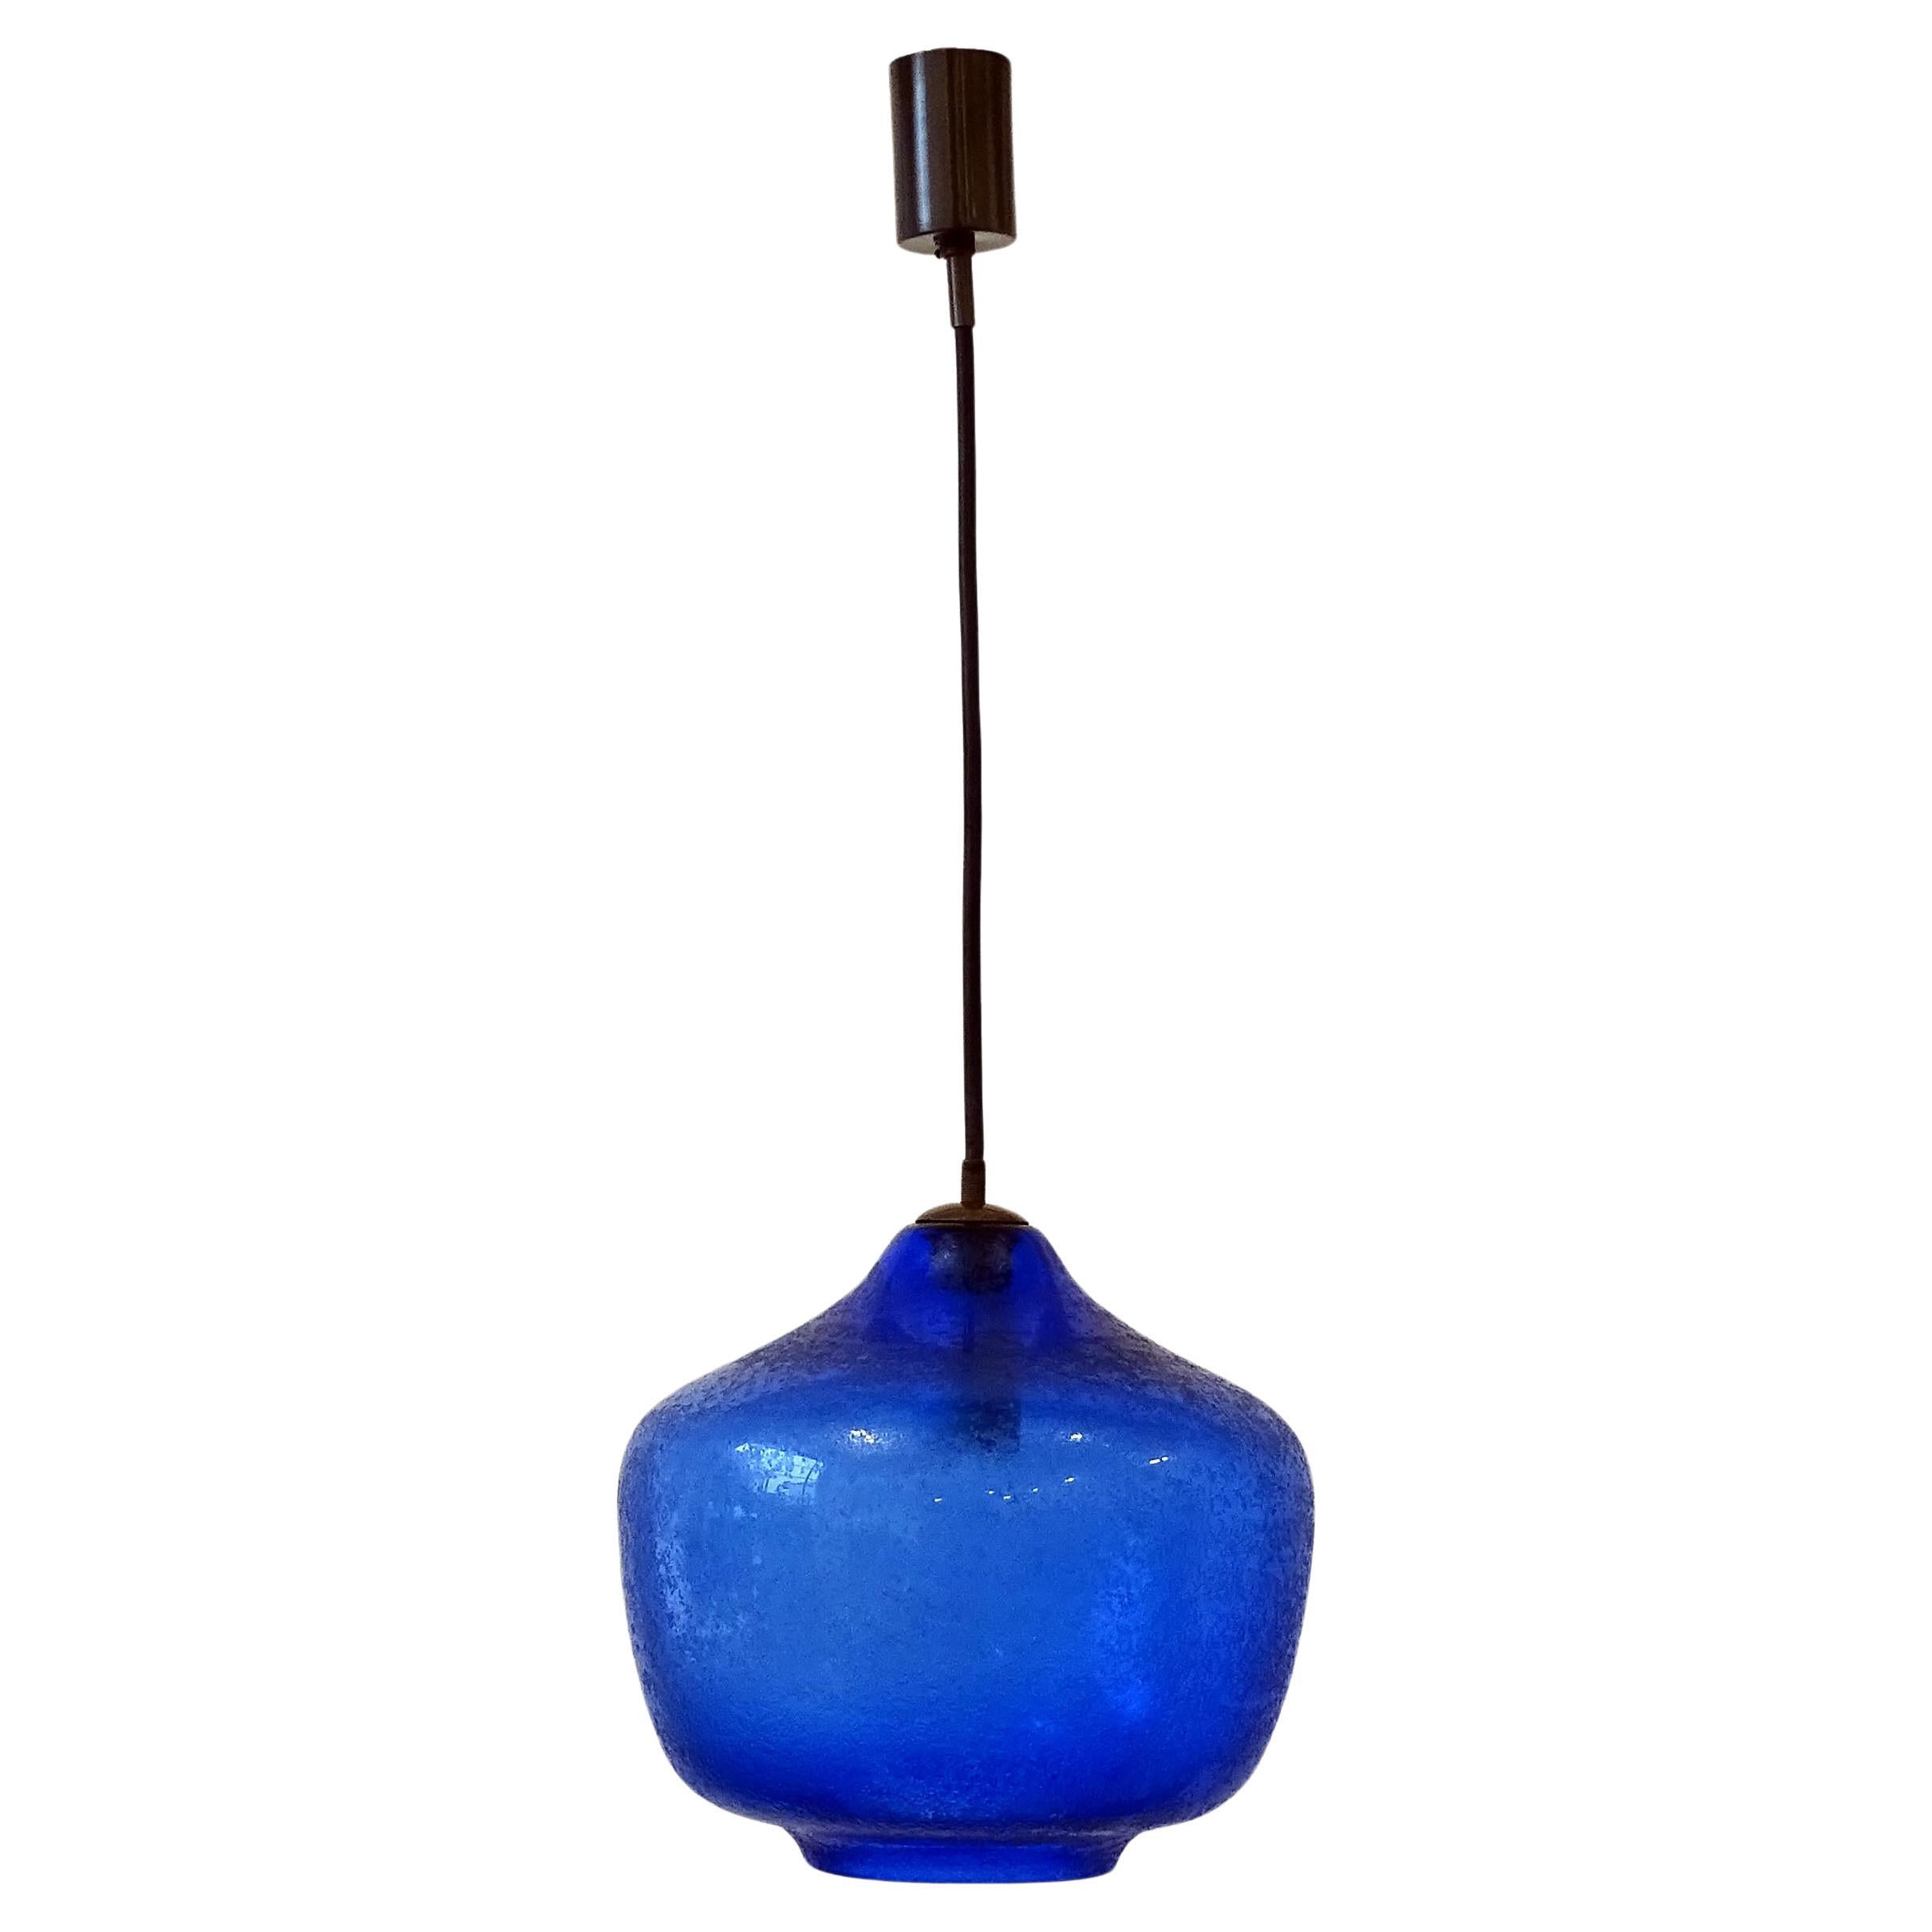 Seguso blue corroso Murano glass pendant lamp, Italy 1950s